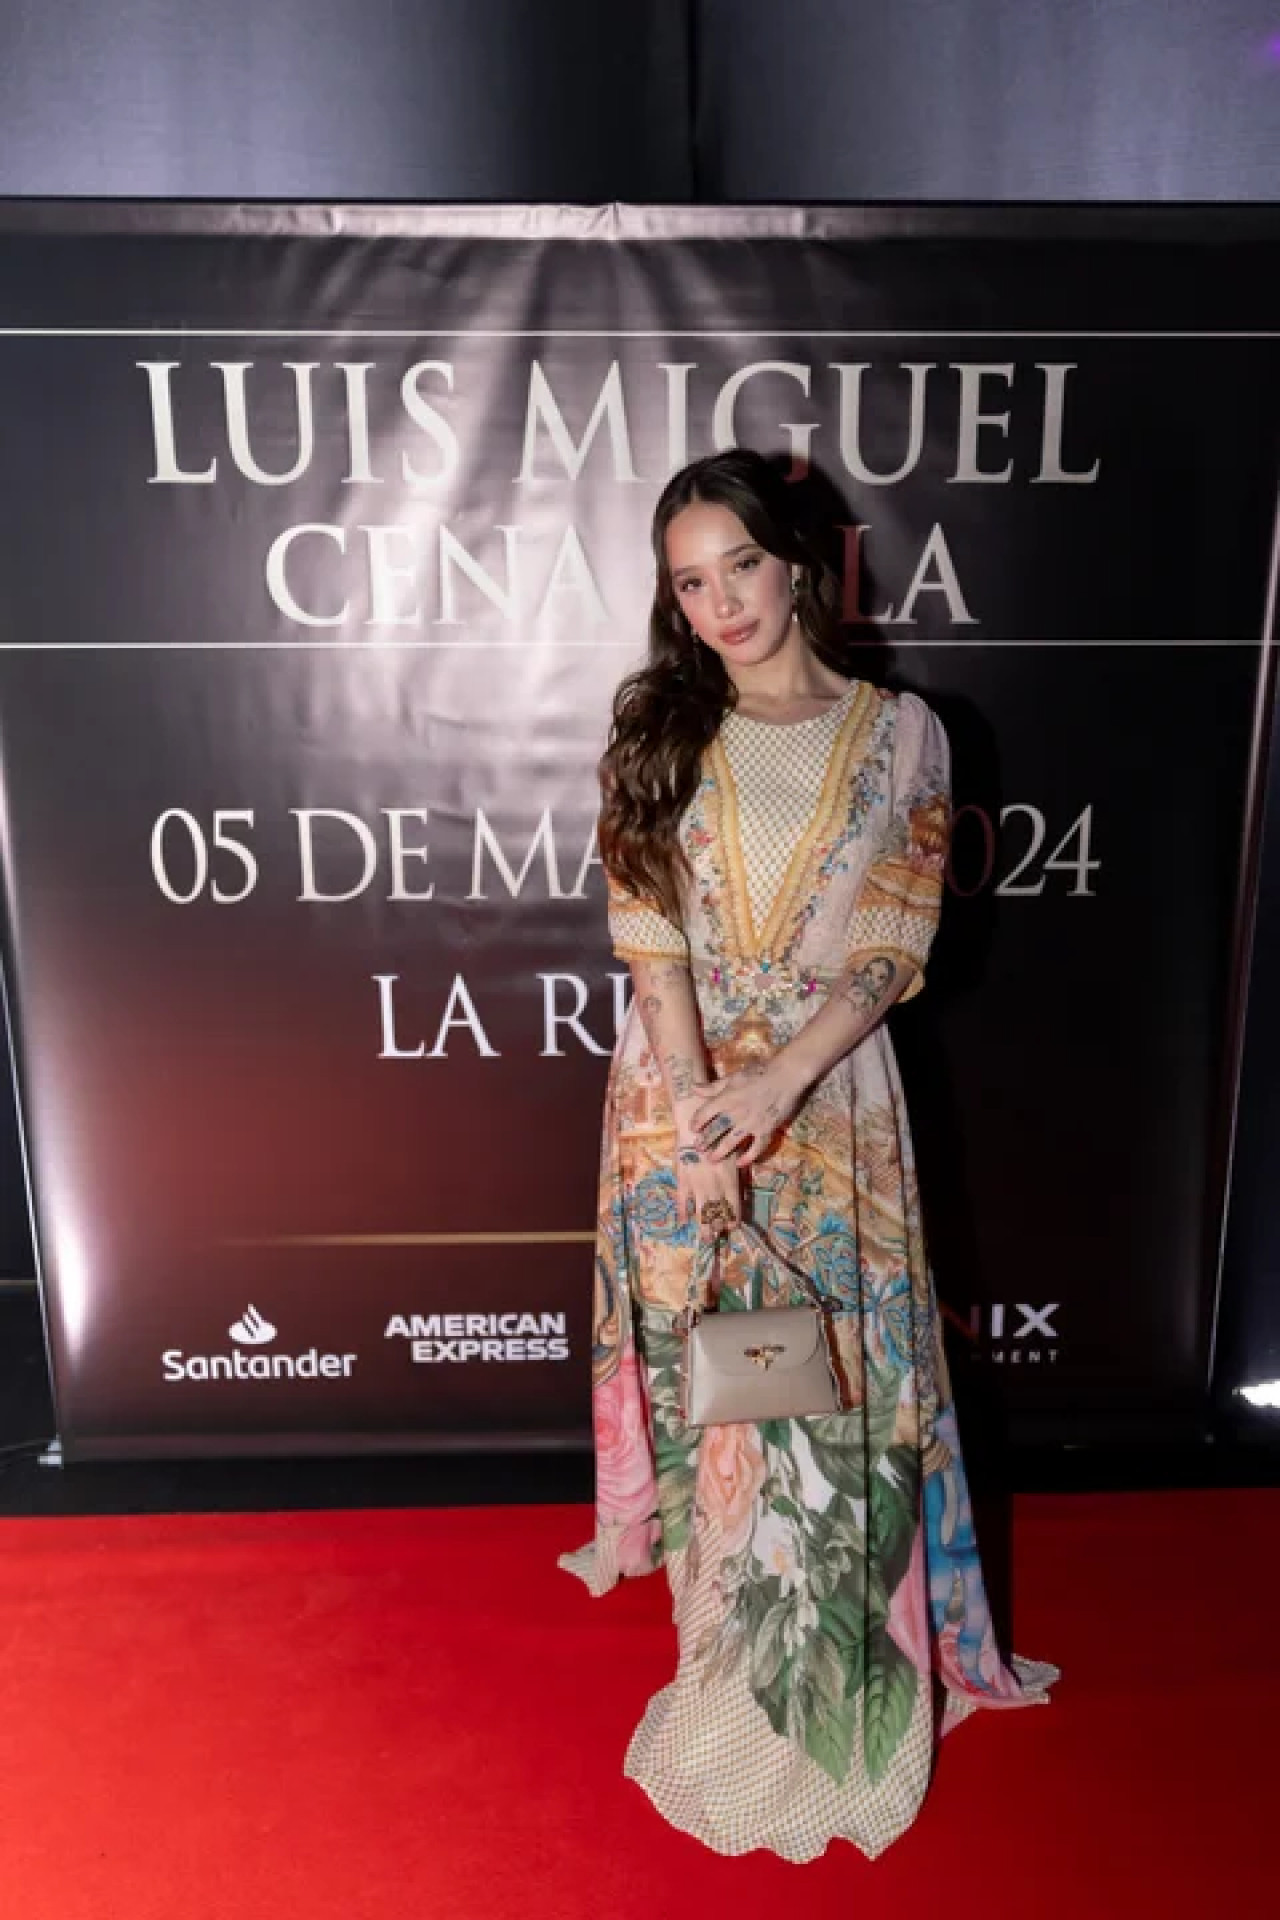 Ángela Torres en el show de Luis Miguel. Foto: NA